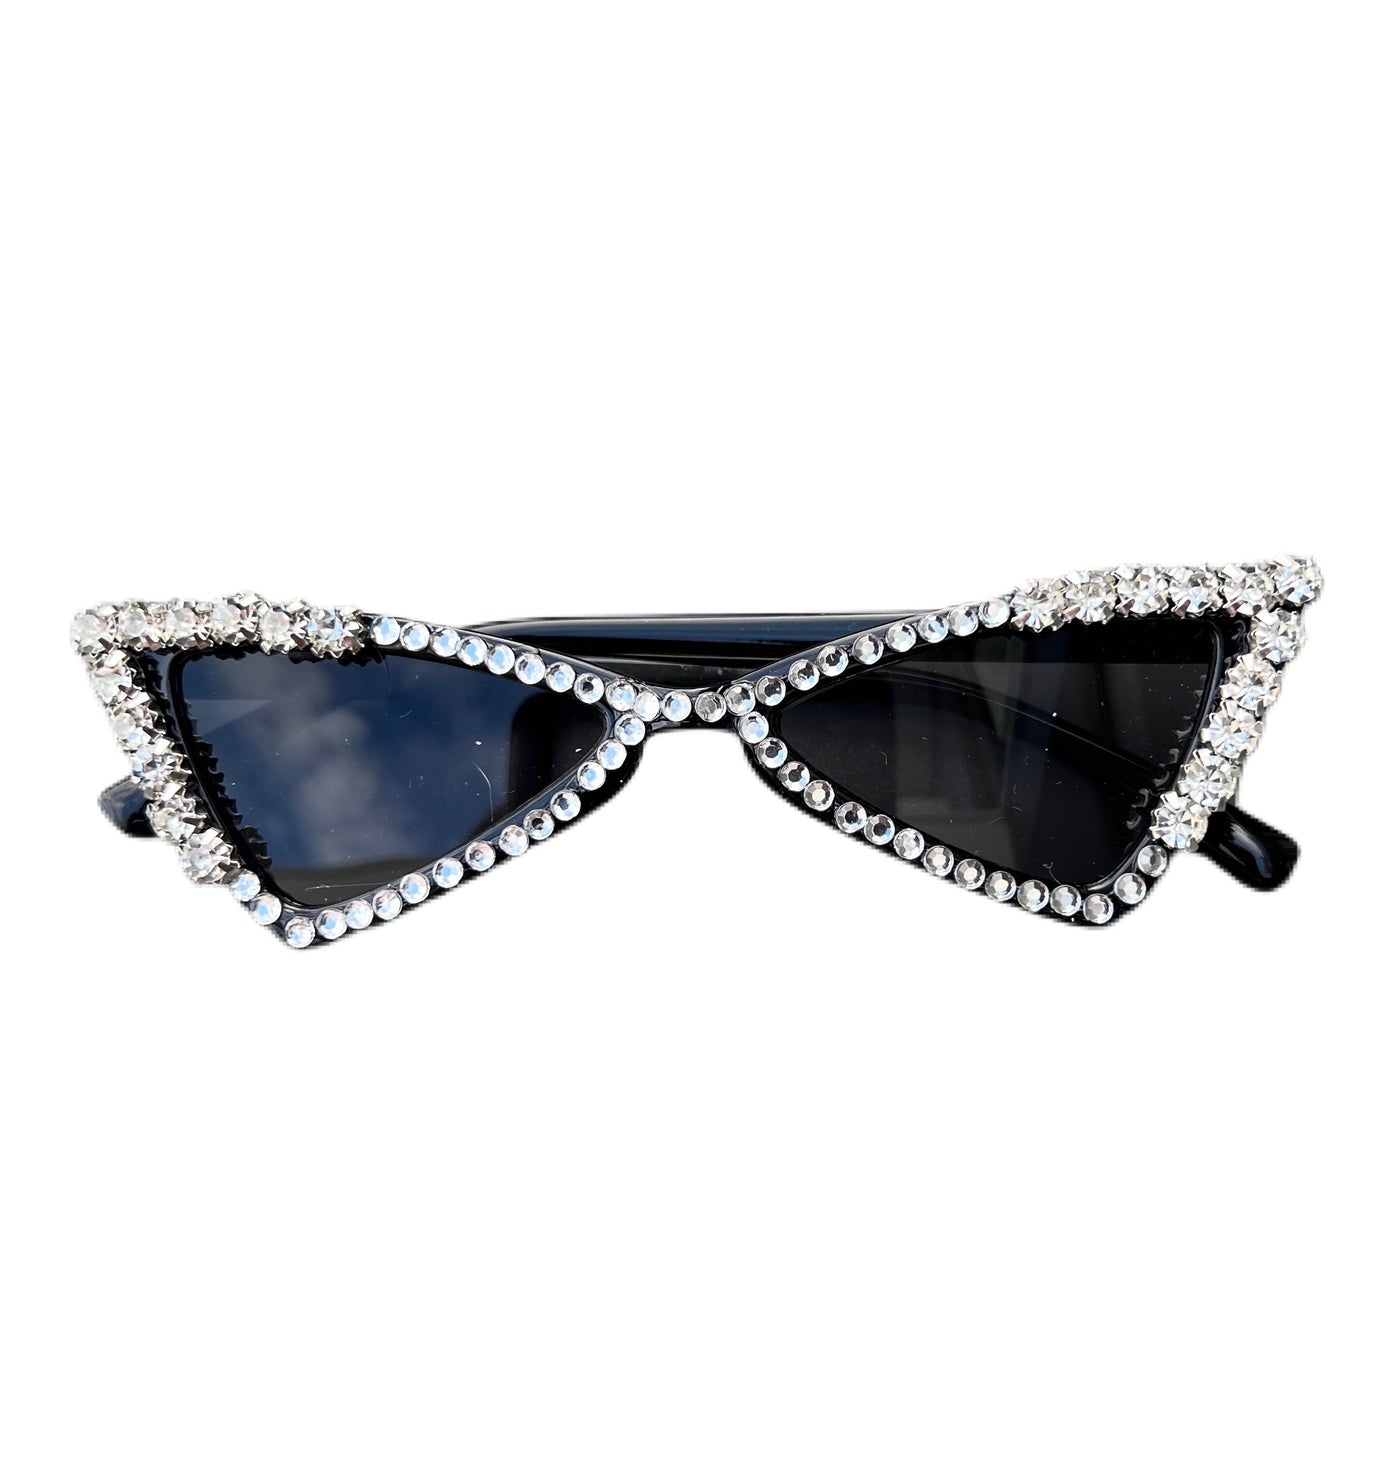 Dog Dress-up SunGlasses - Movie Star (Black)